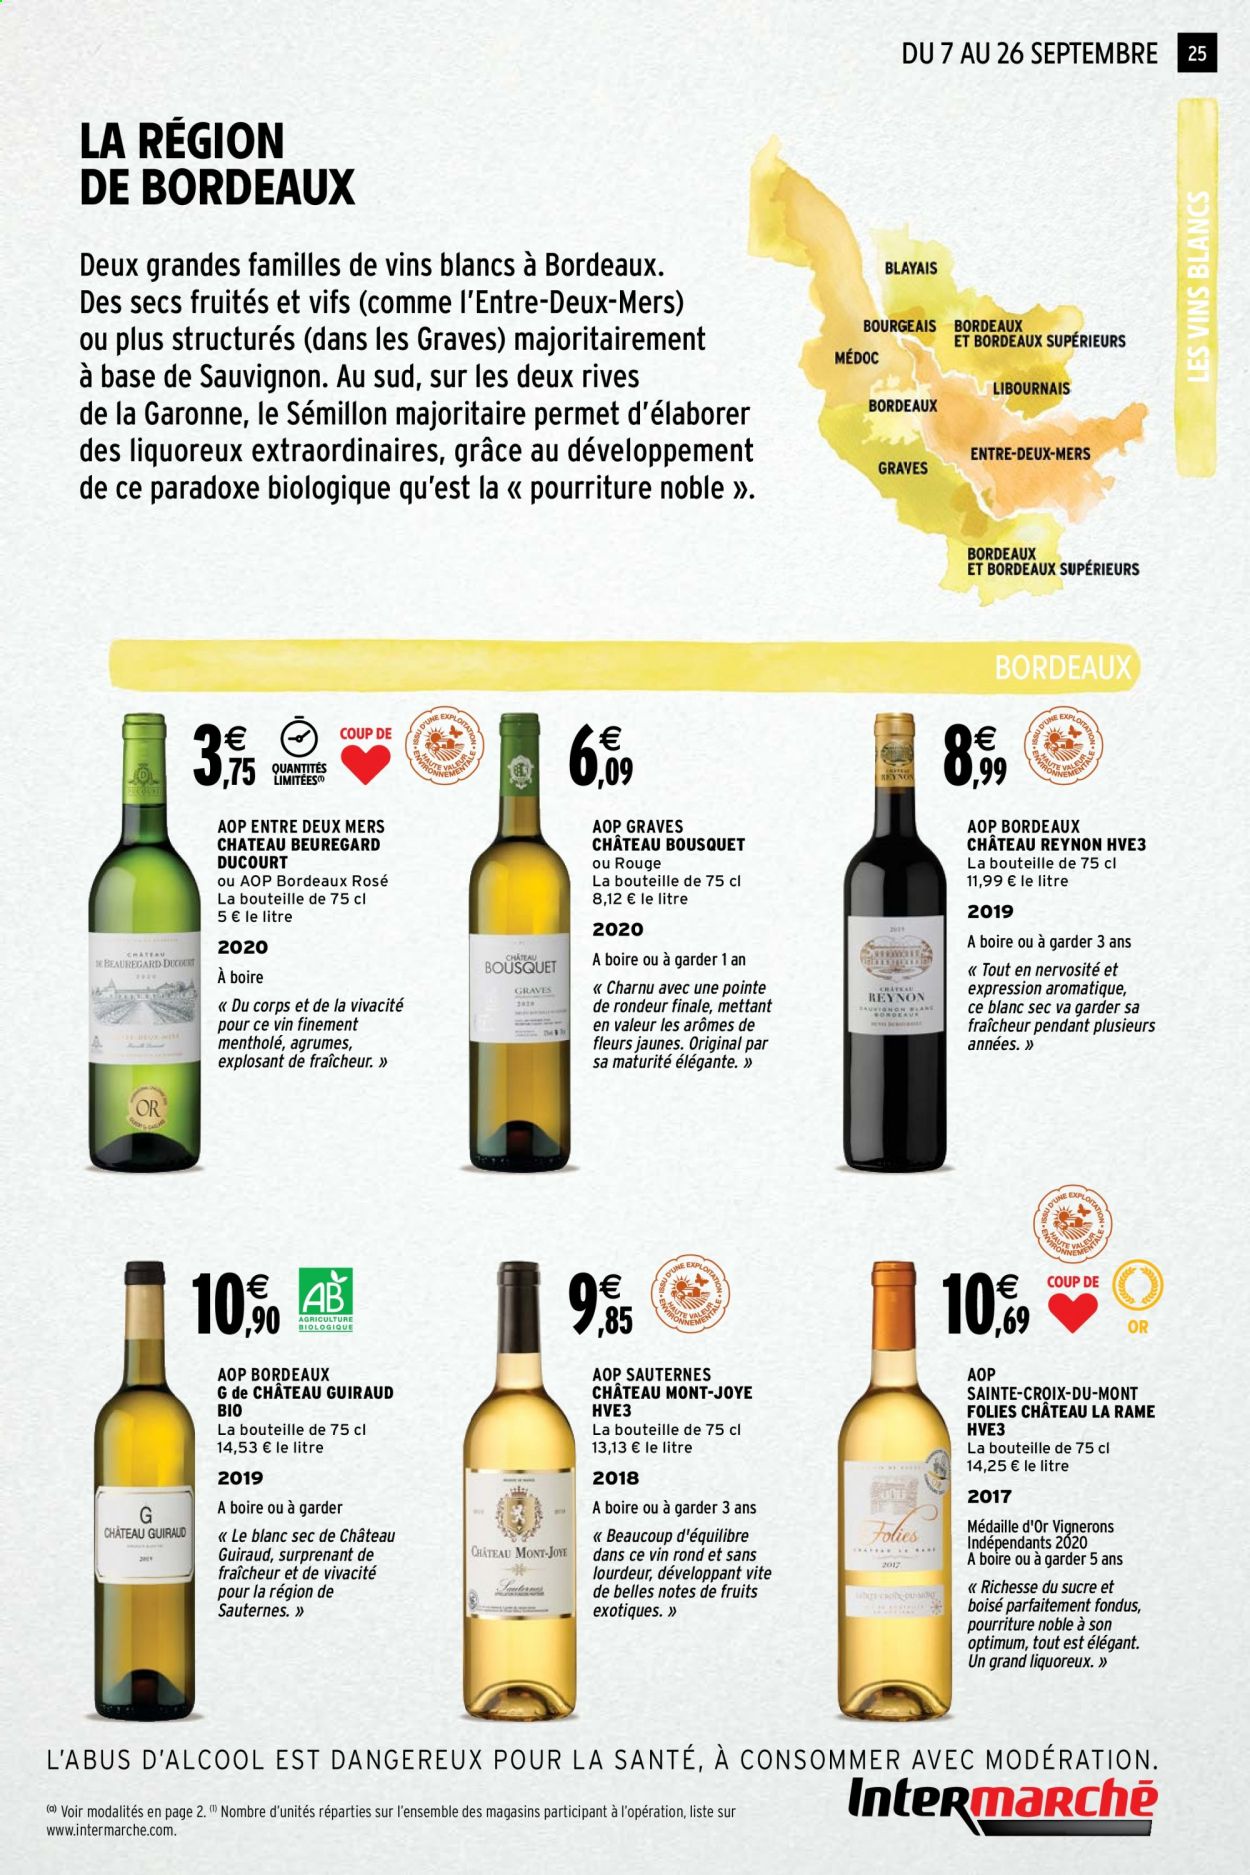 thumbnail - Catalogue Intermarché - 07/09/2021 - 26/09/2021 - Produits soldés - Bordeaux, vin blanc, vin rouge, Sauternes, Cabernet Sauvignon. Page 25.